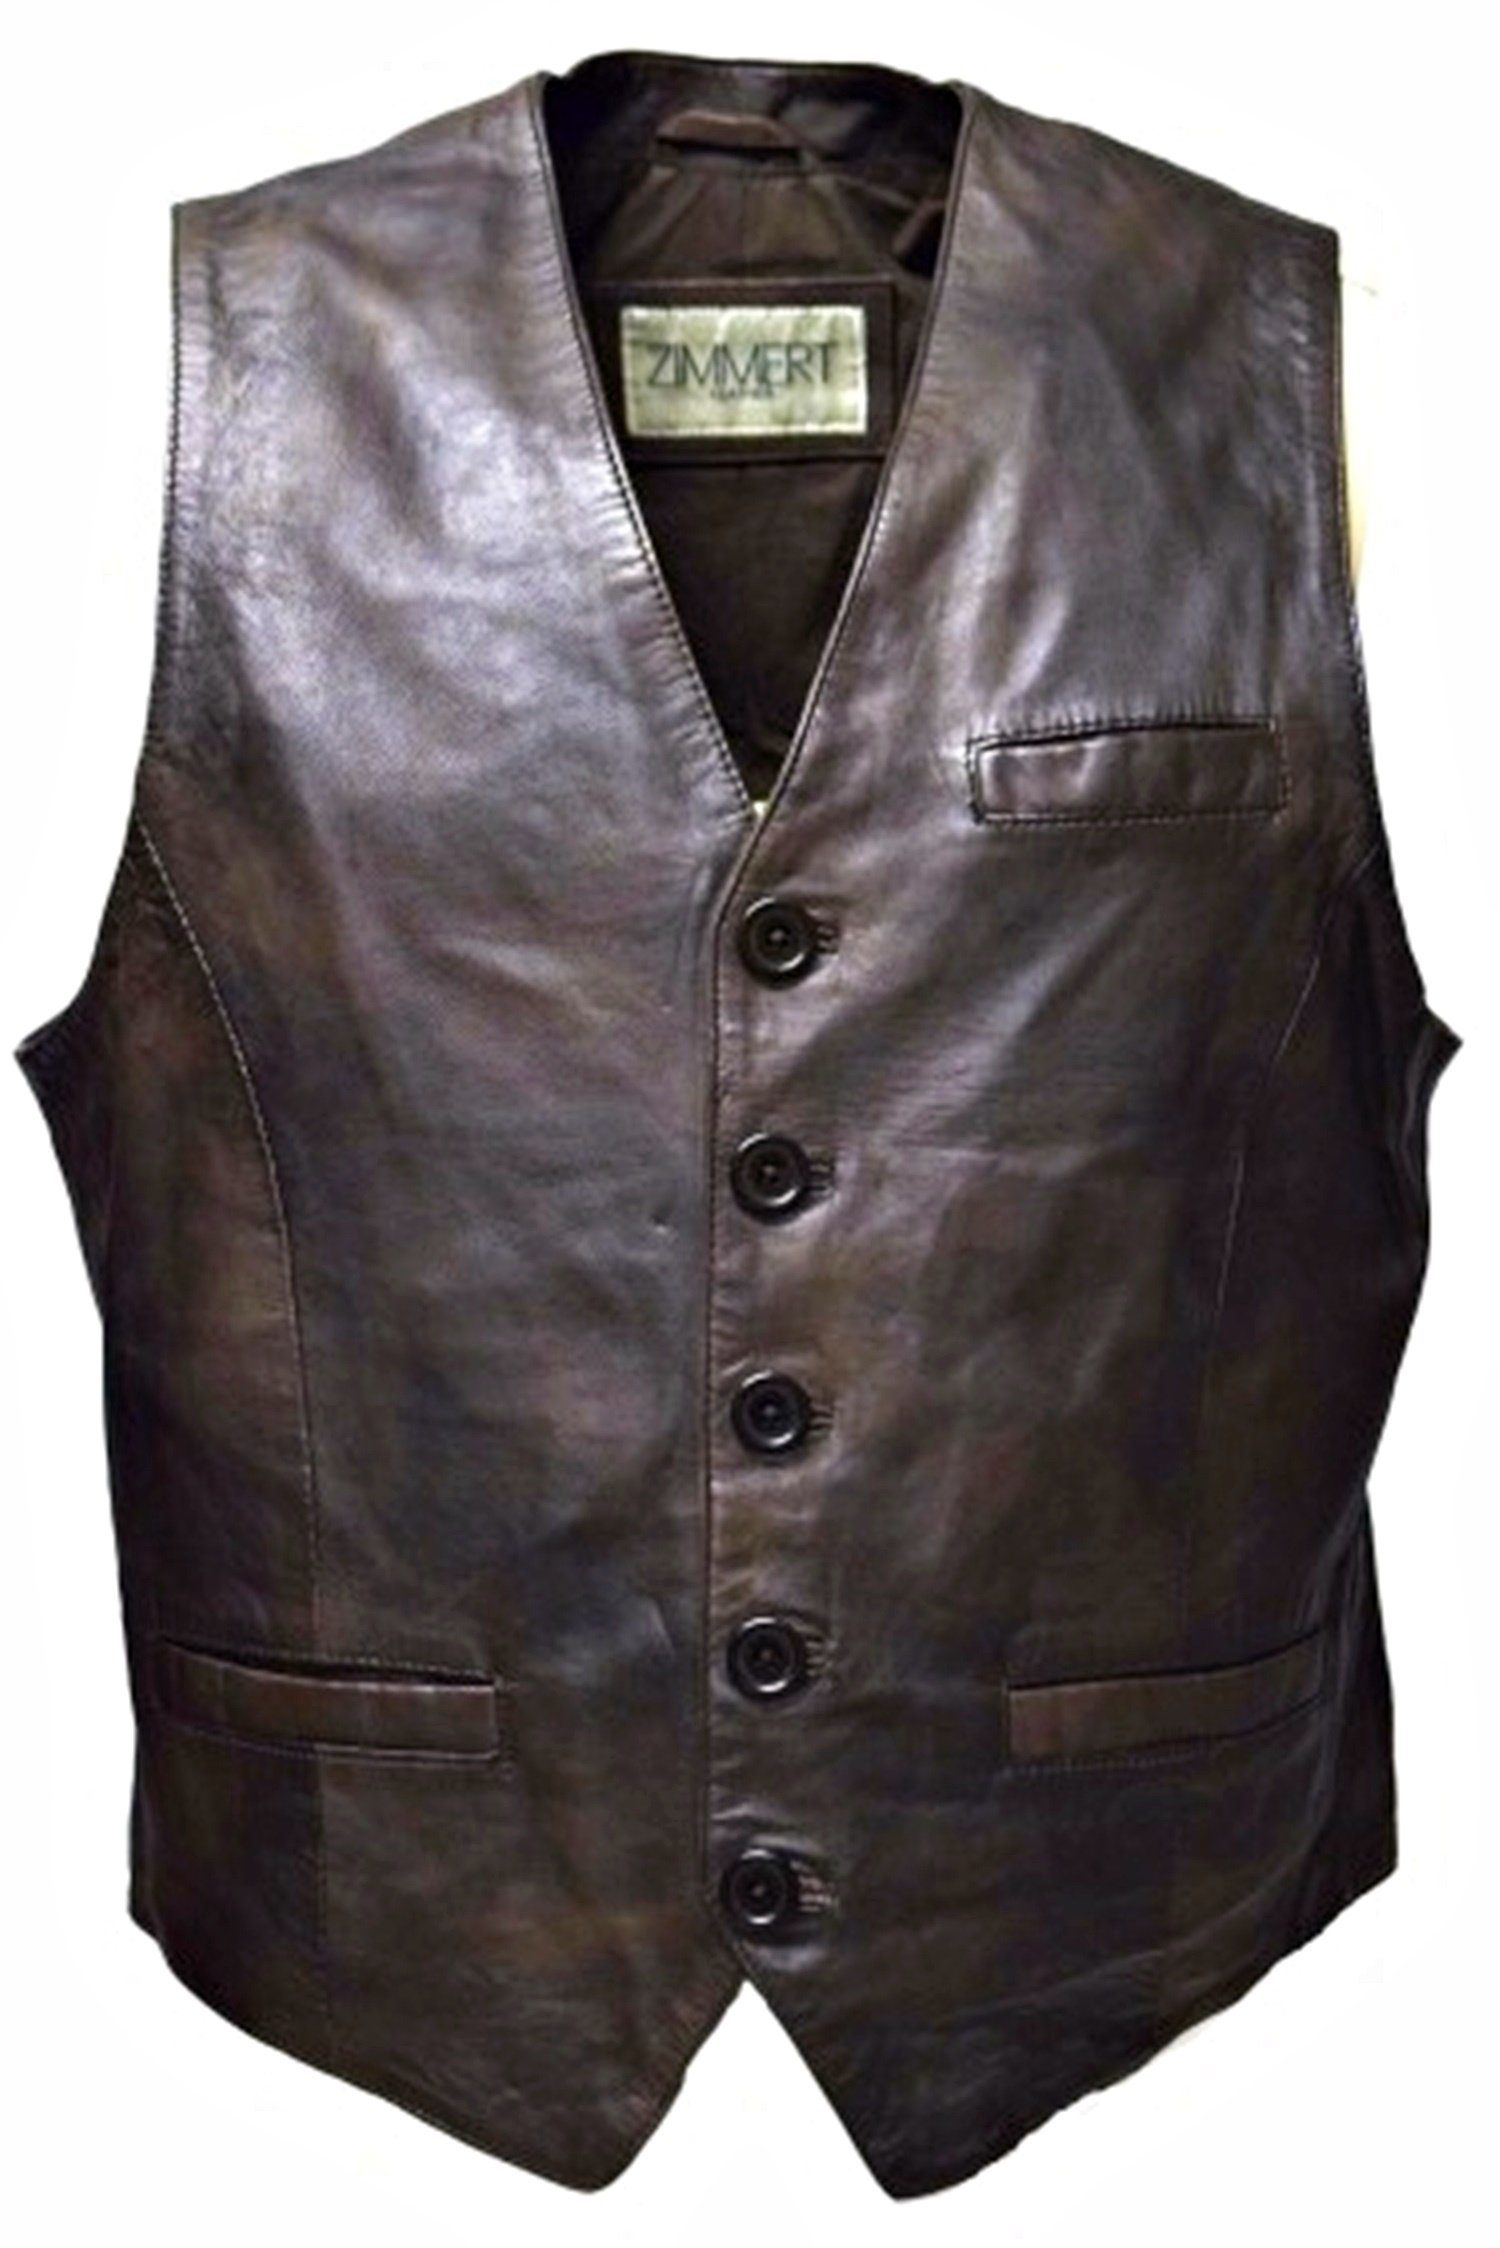 Zimmert Leather Lederweste Nico mit praktischen Taschen, besonders weiches  Leder, Braun, Cognac